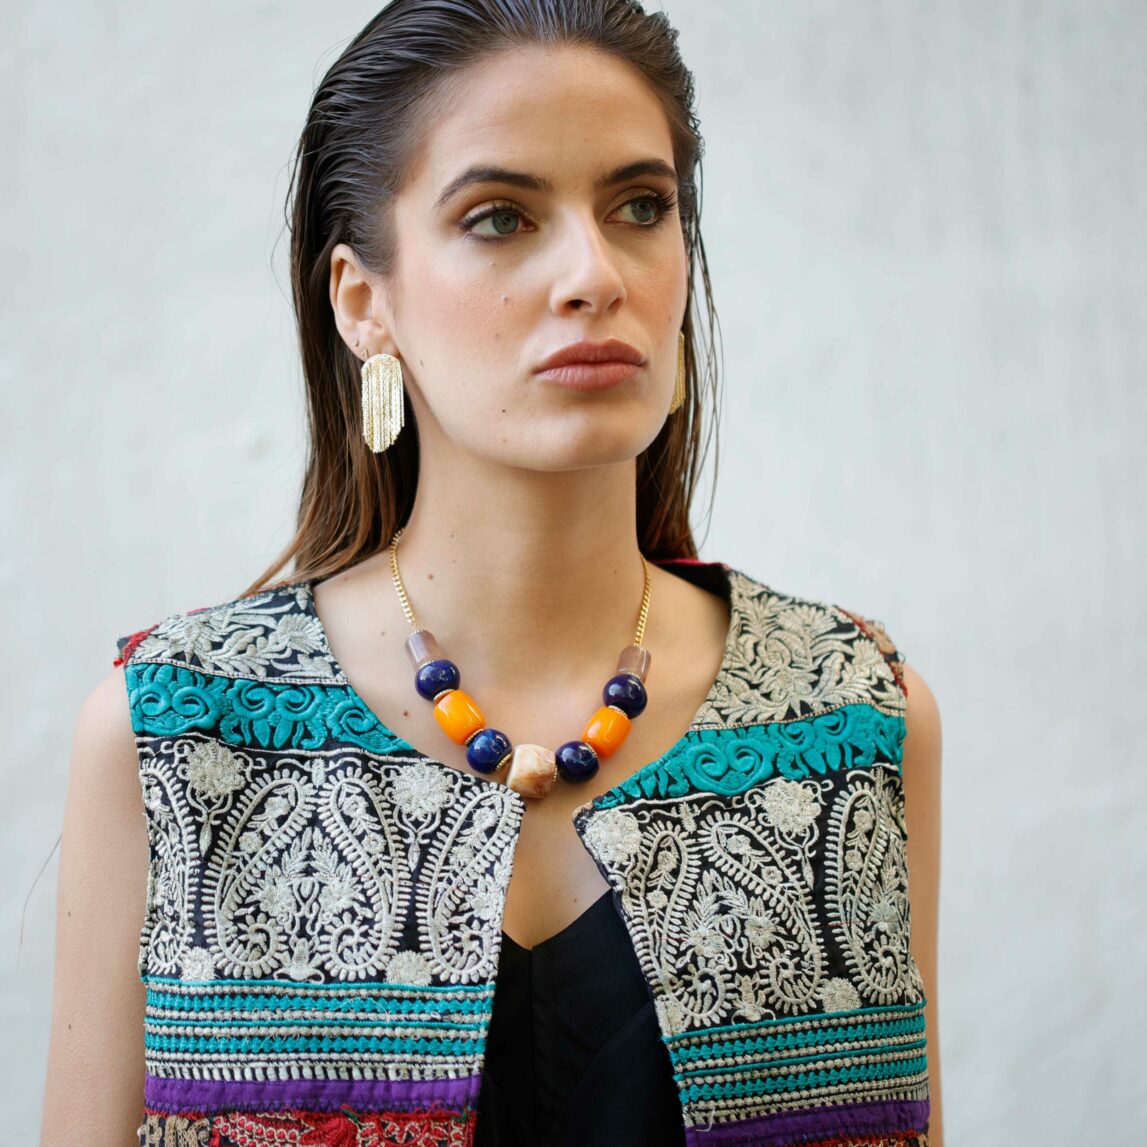 El collar piedras de colores Marrakech es un diseño Darwin collection perfecto para lucir este verano con tus looks más básicos o playeros. Una joya ideal para regalarte o regalar.